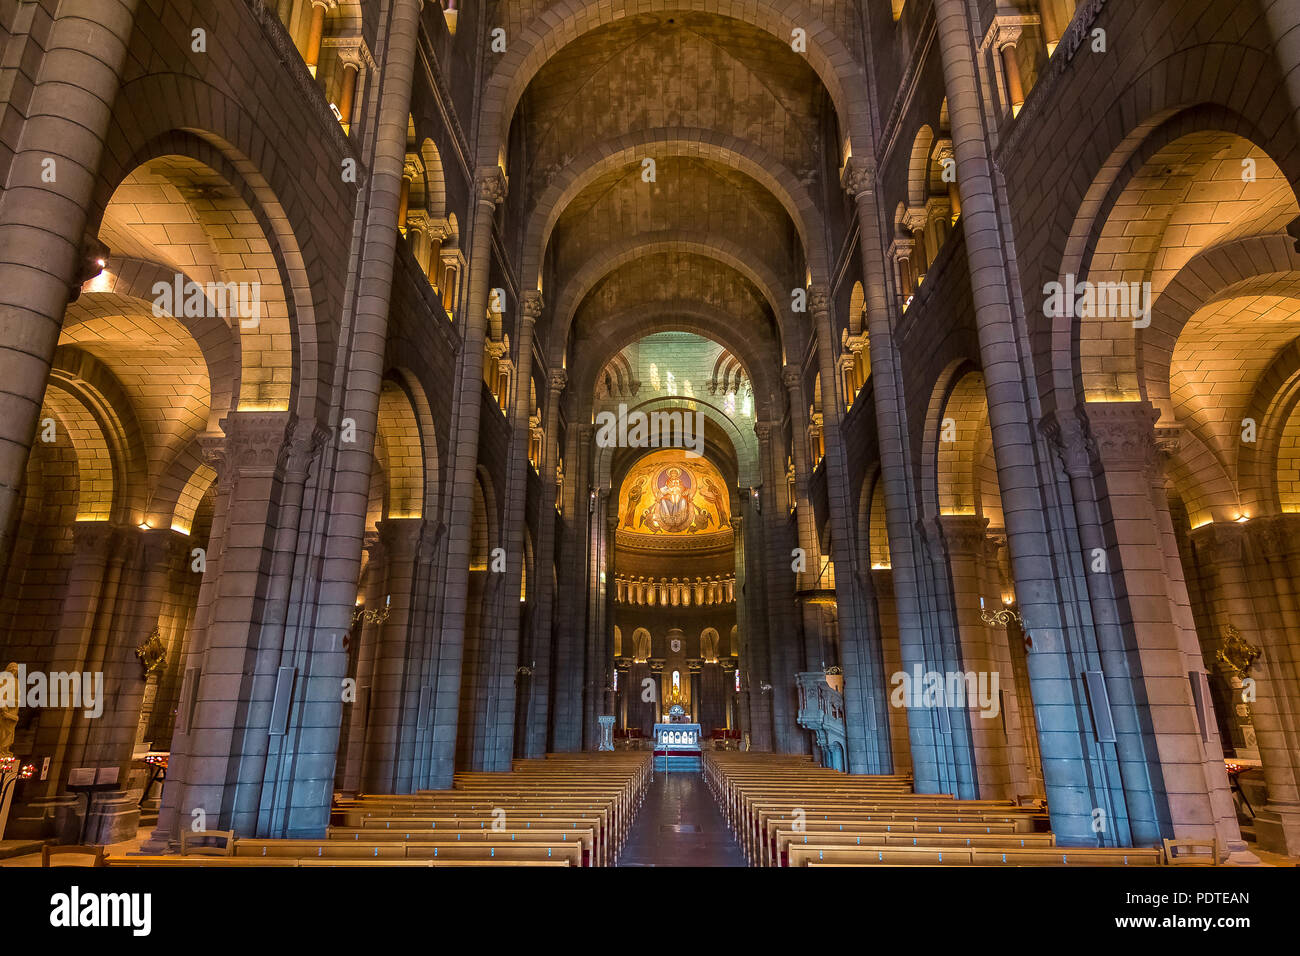 Intérieur de la cathédrale de Saint Nicolas, de style roman du 19e siècle cathédrale catholique, où l'image monégasque, les Grimaldi, comme Grace Kelly et Princ Banque D'Images